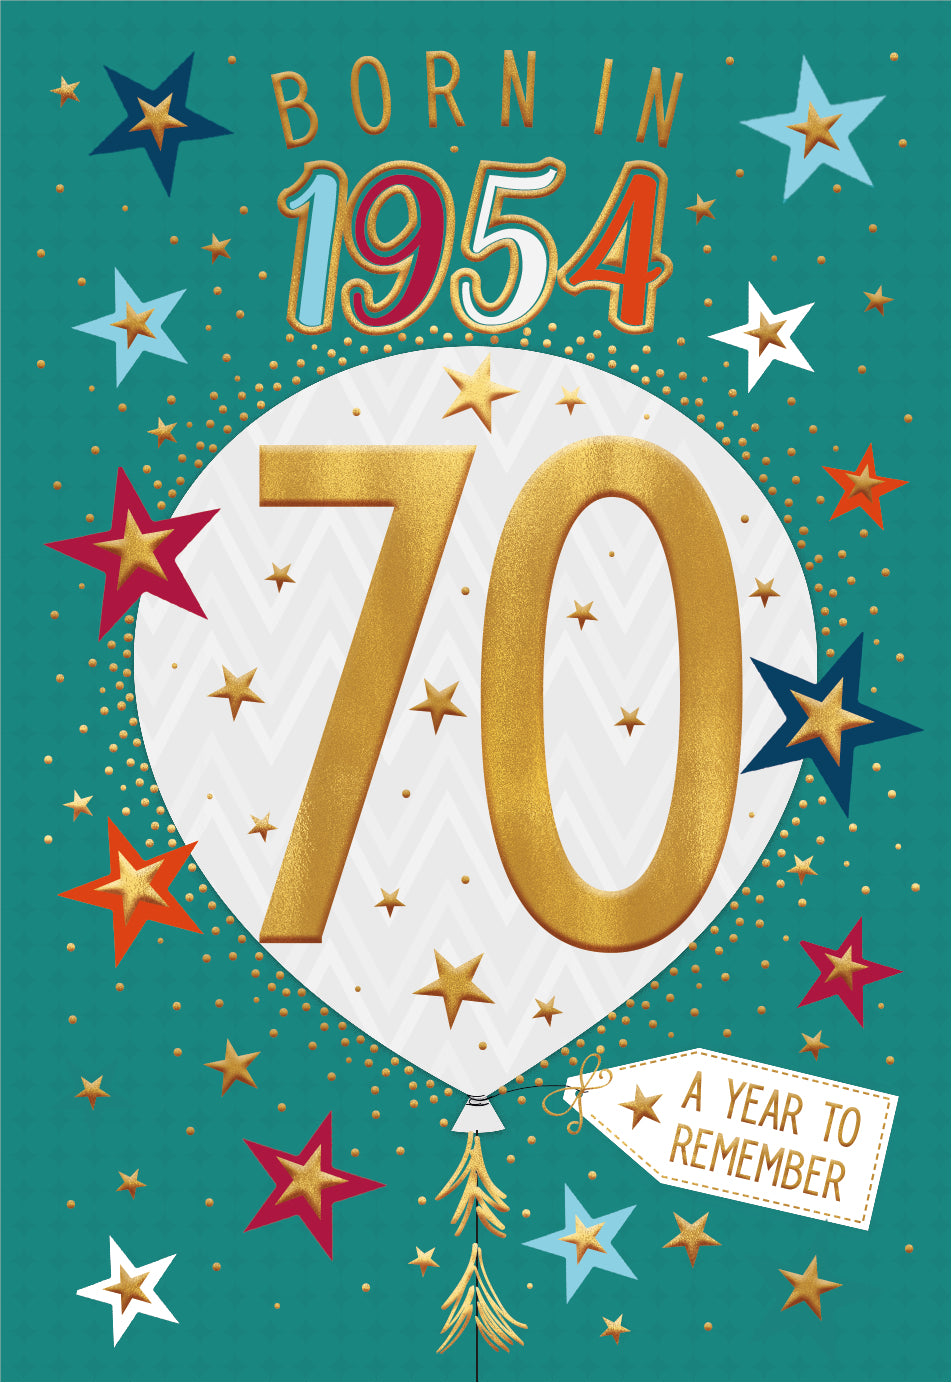 70th birthday card - born in 1954